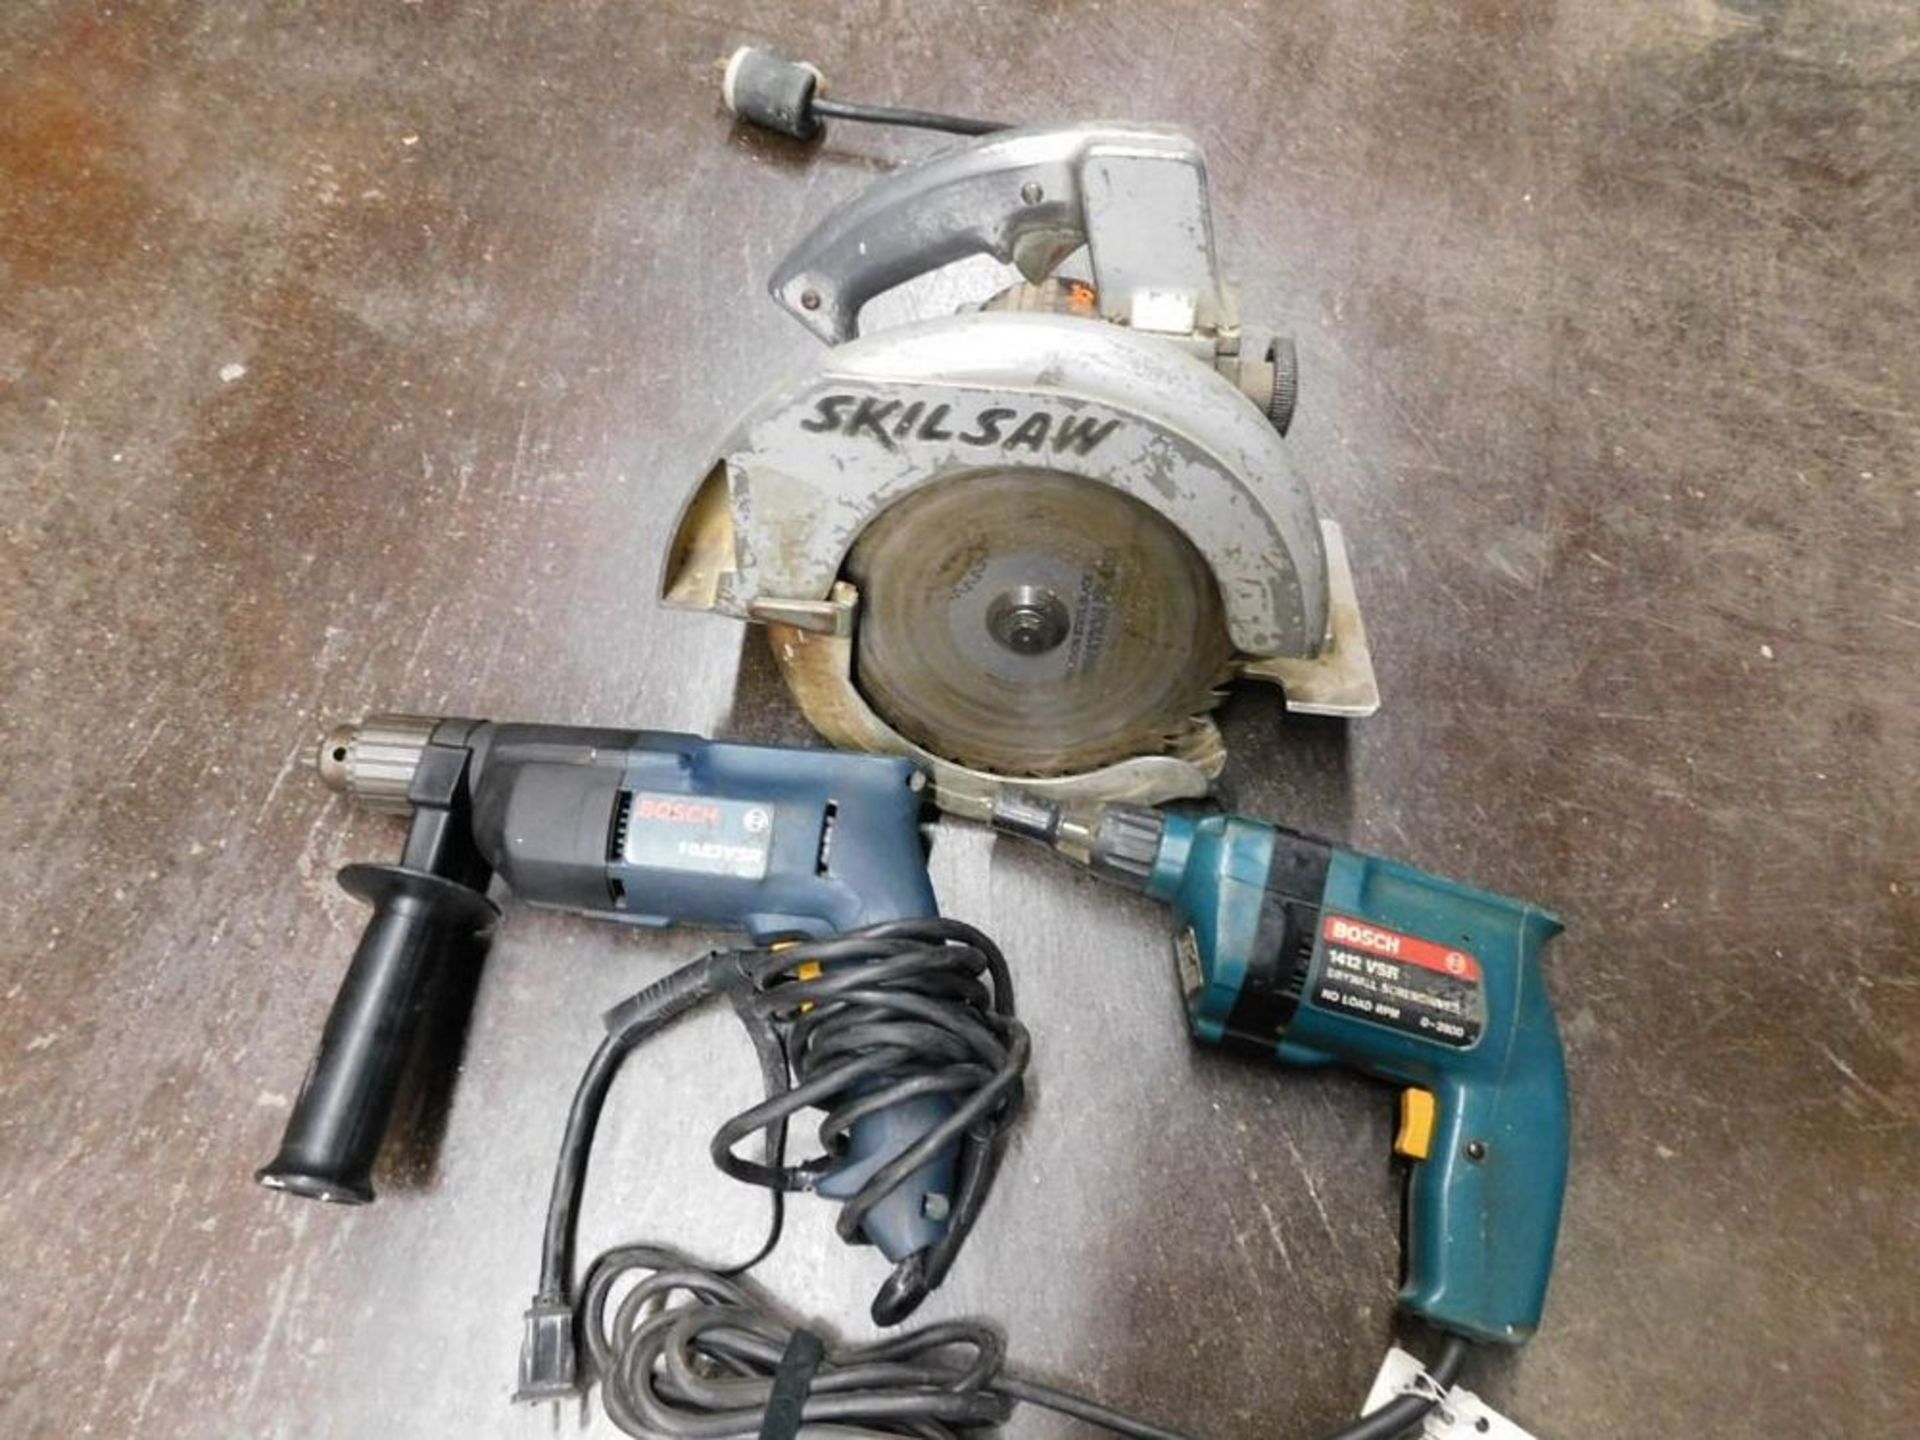 LOT: (1) Skil Saw 8-1/4" Circular Saw, (1) Bosch 1412 VSR Drywall Screw Driver, (1) Bosch 1023 VSR